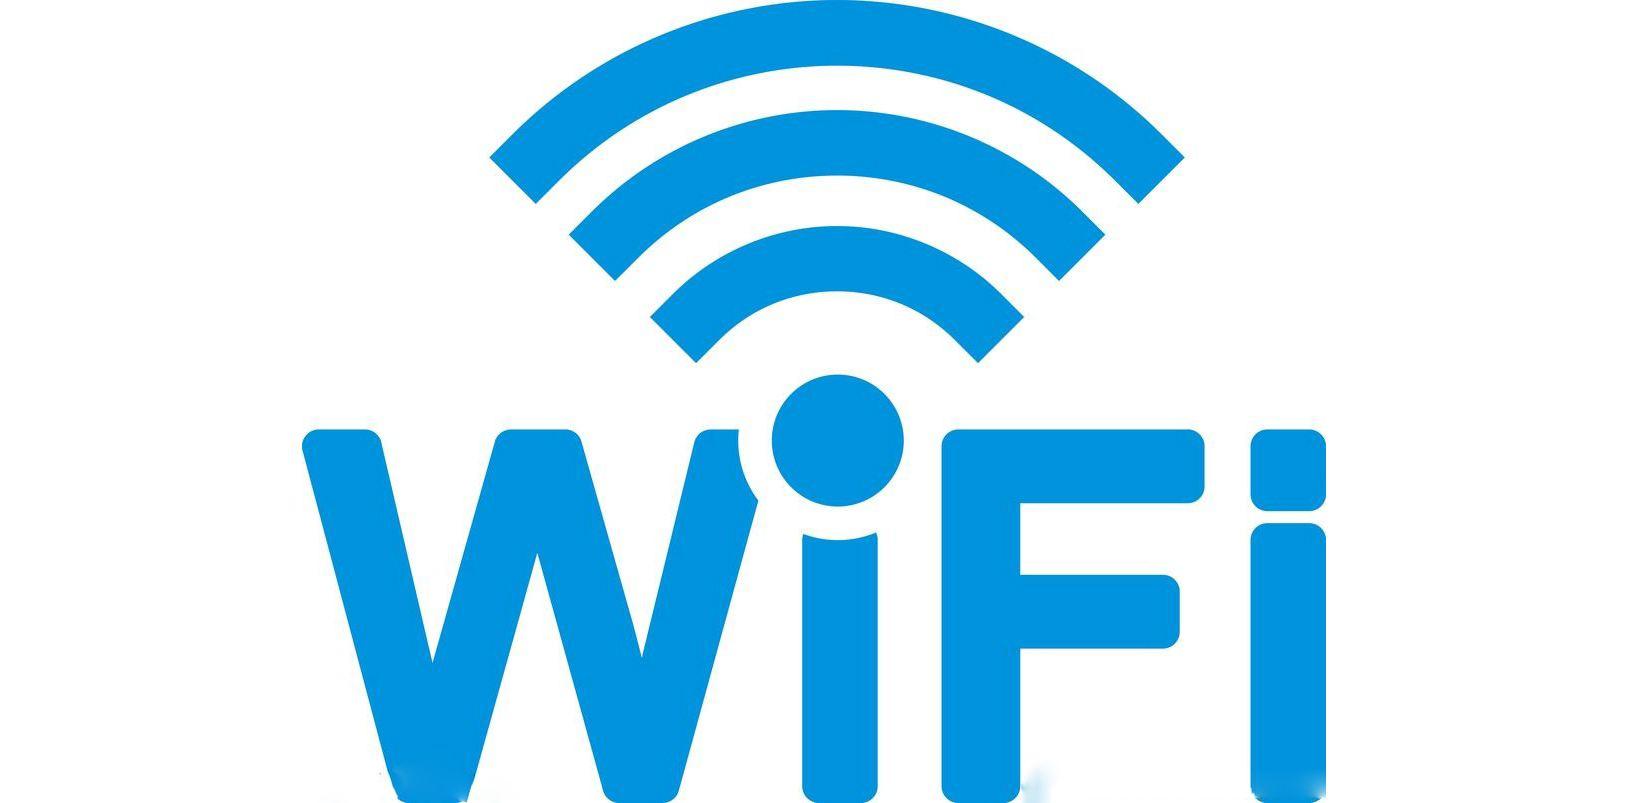 WiFi连接卡-WiFi连接卡片制作工具,扫码连接WiFi,src=http___5b0988e595225.cdn.sohucs.com_images_20180330_1393de72a6d942beab26794bbb62ed7f.jpeg&refer=http___5b0988e595225.cdn.sohucs.jpg,wifi,网络连接,wifi卡,无线网络,第1张